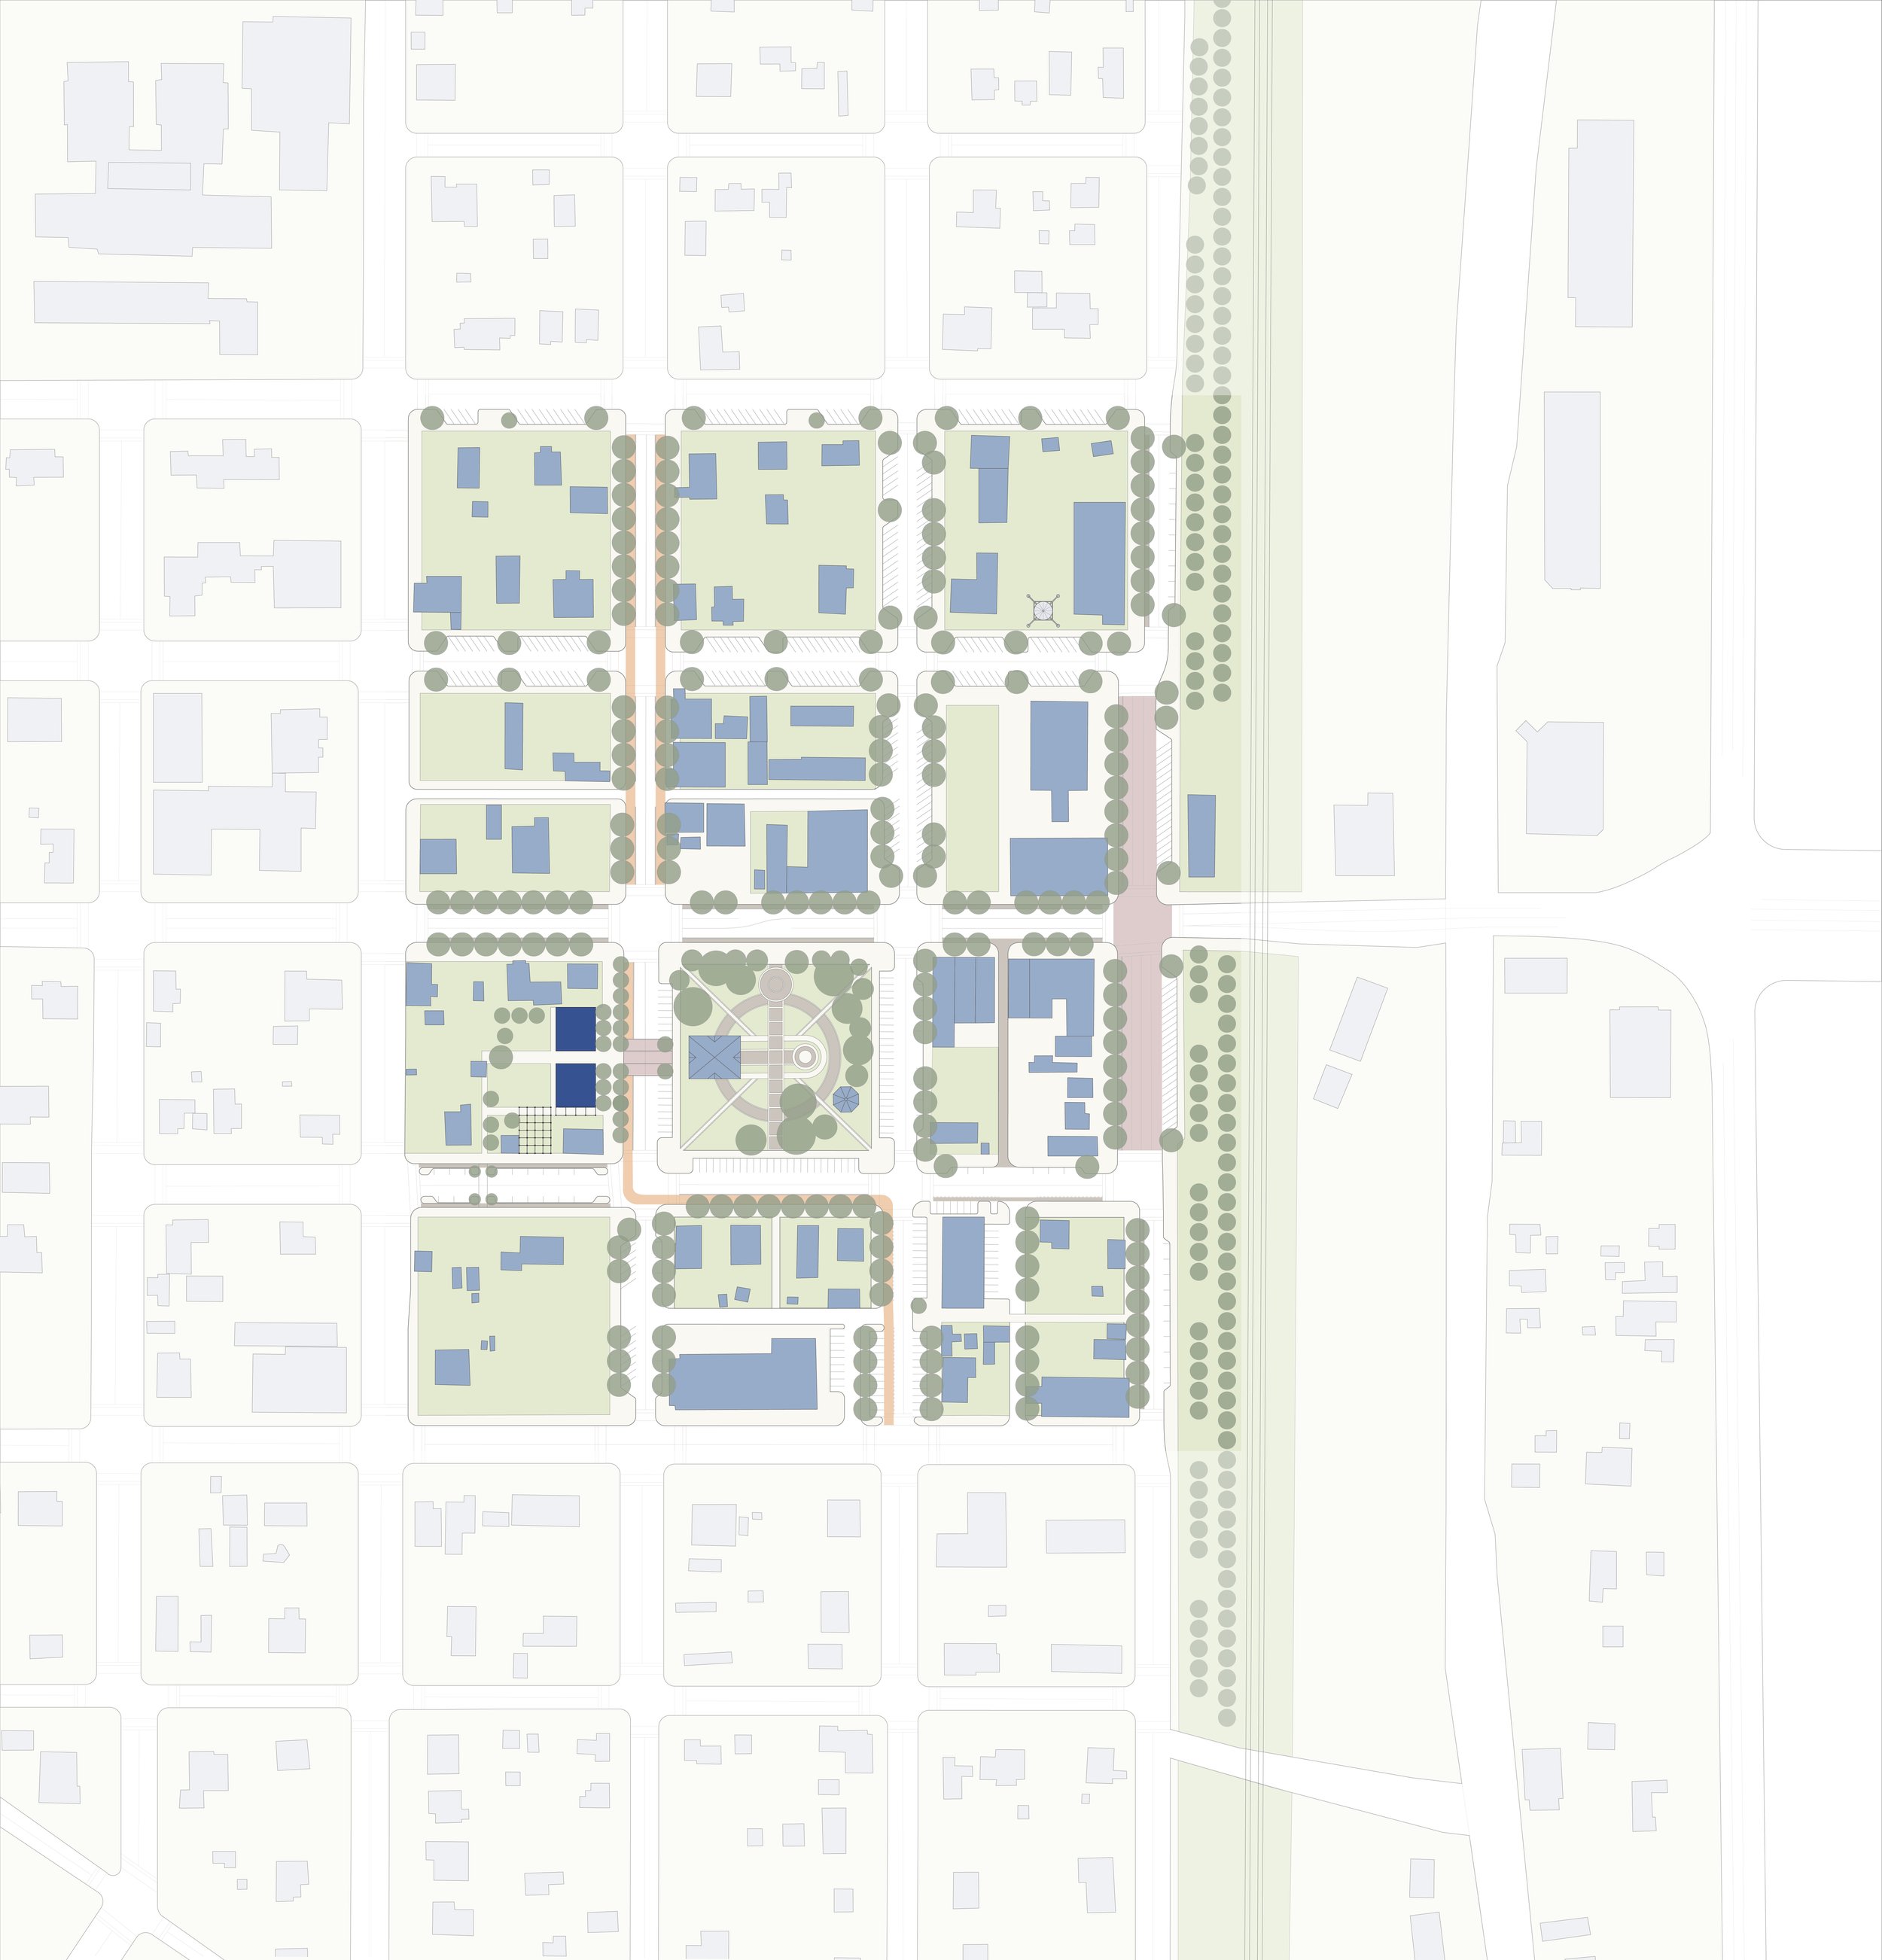 DowntownMasterPlan_Phase01-01.jpg